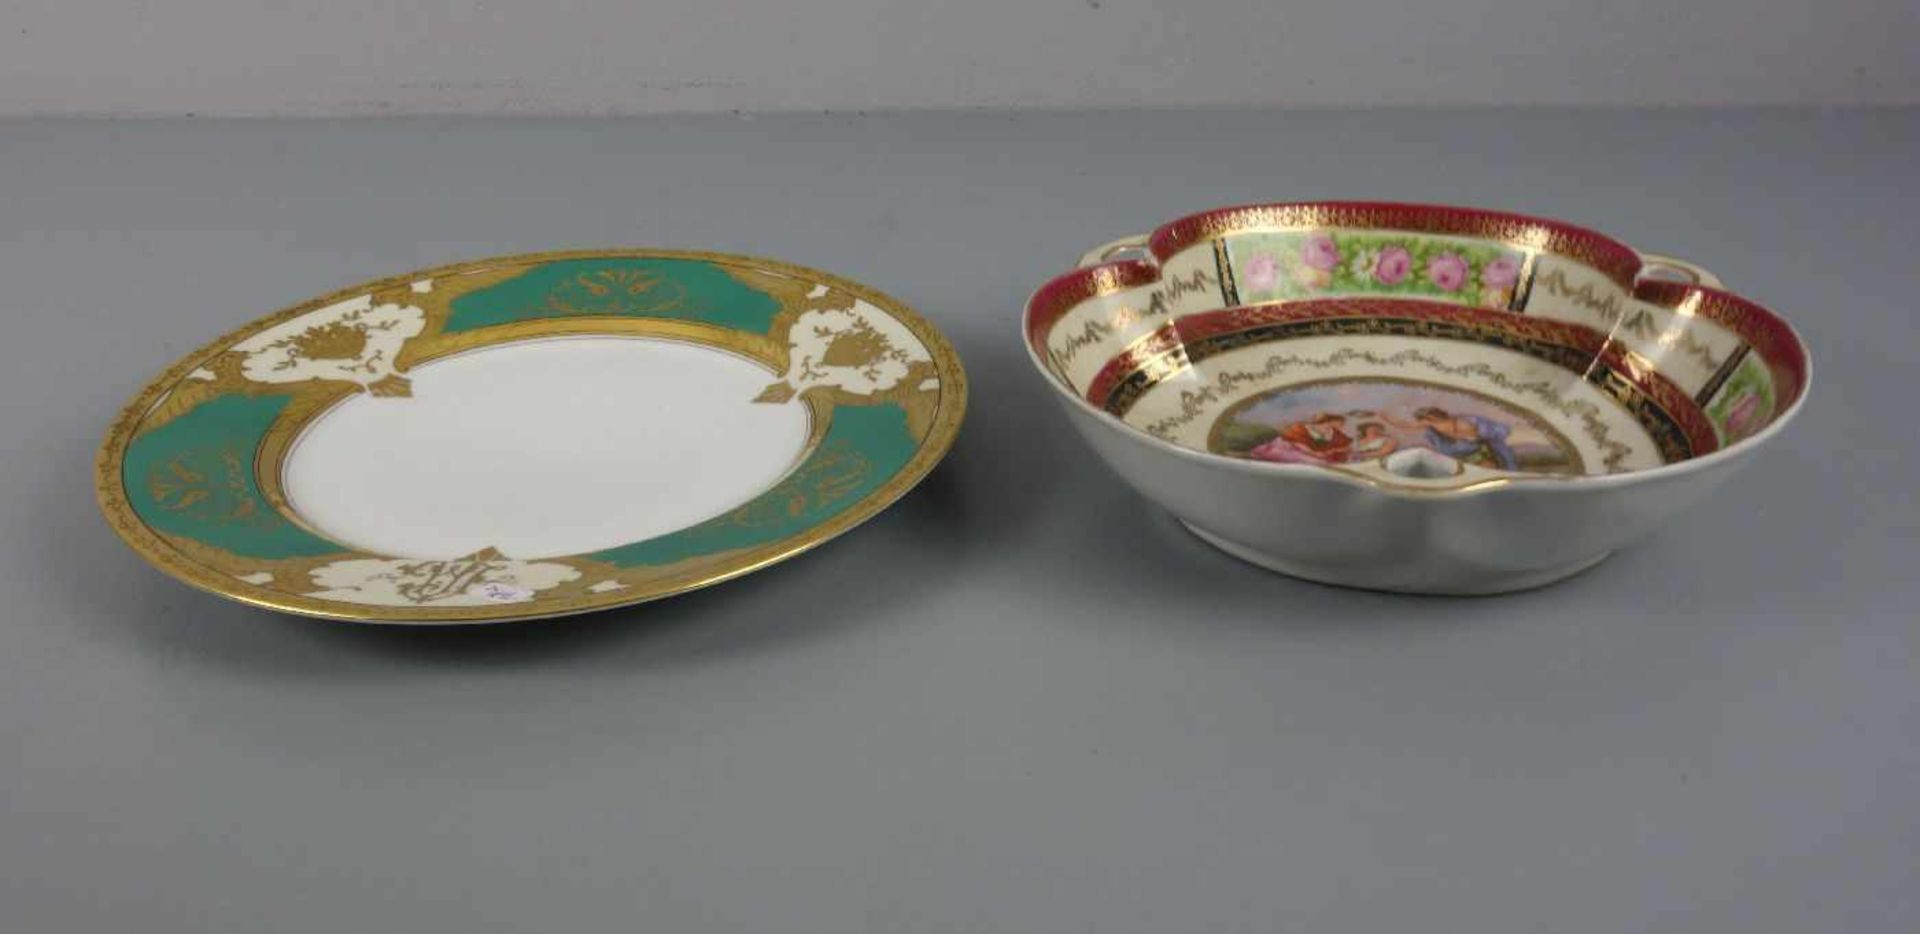 KONVOLUT PORZELLAN: PRUNKTELLER UND SCHALE / porcelain plate and bowl, 20. Jh., Porzellan. 1) Schale - Image 2 of 4